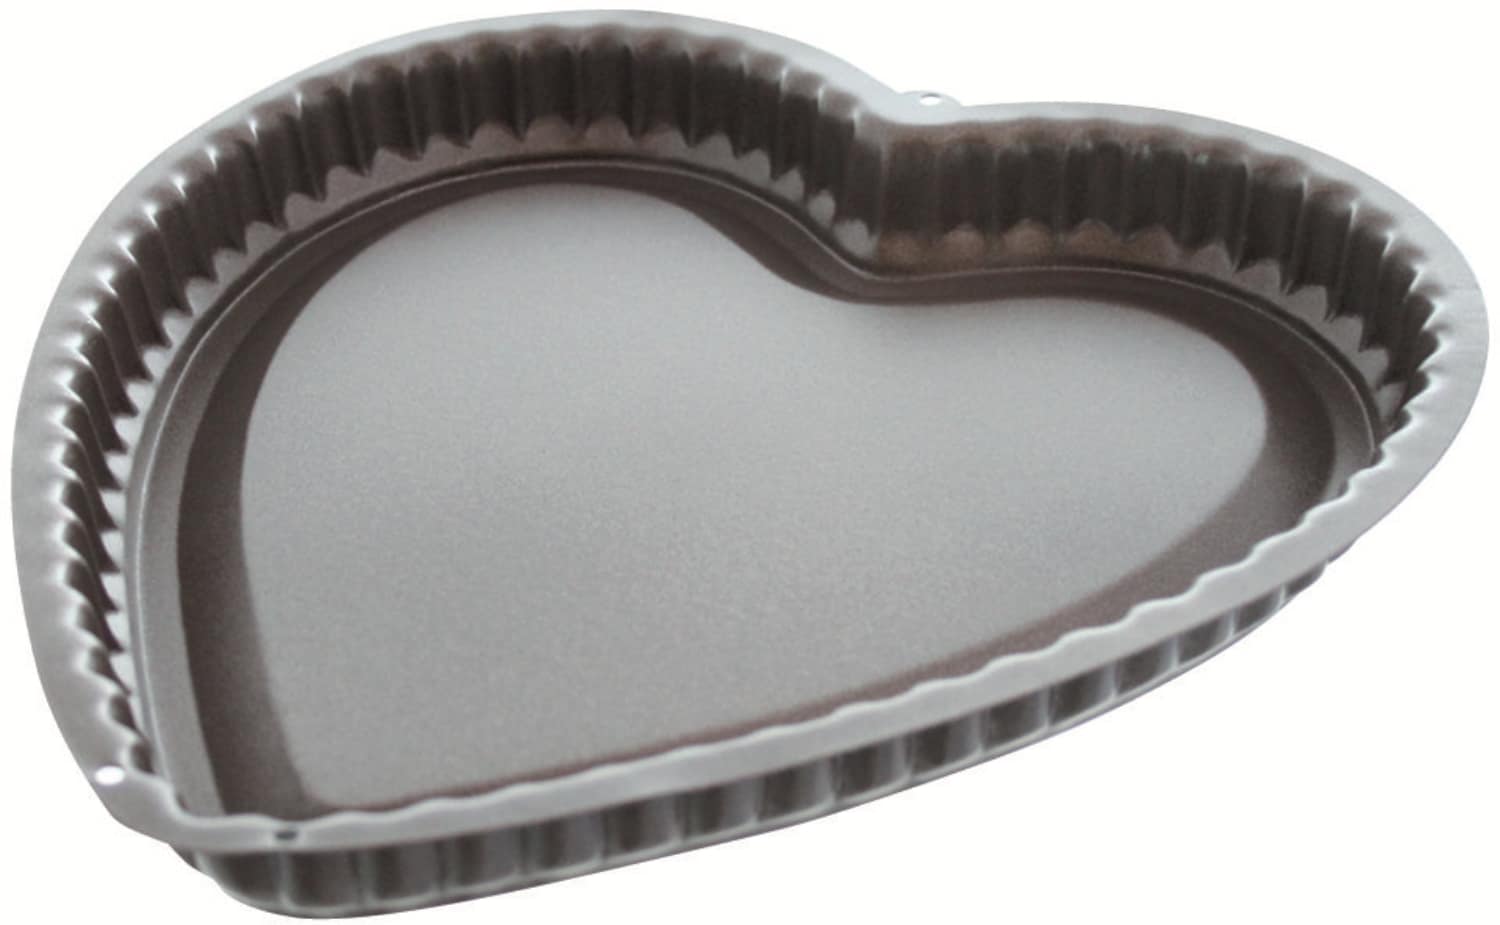 Baking mould "Heart" wavy rim 967075